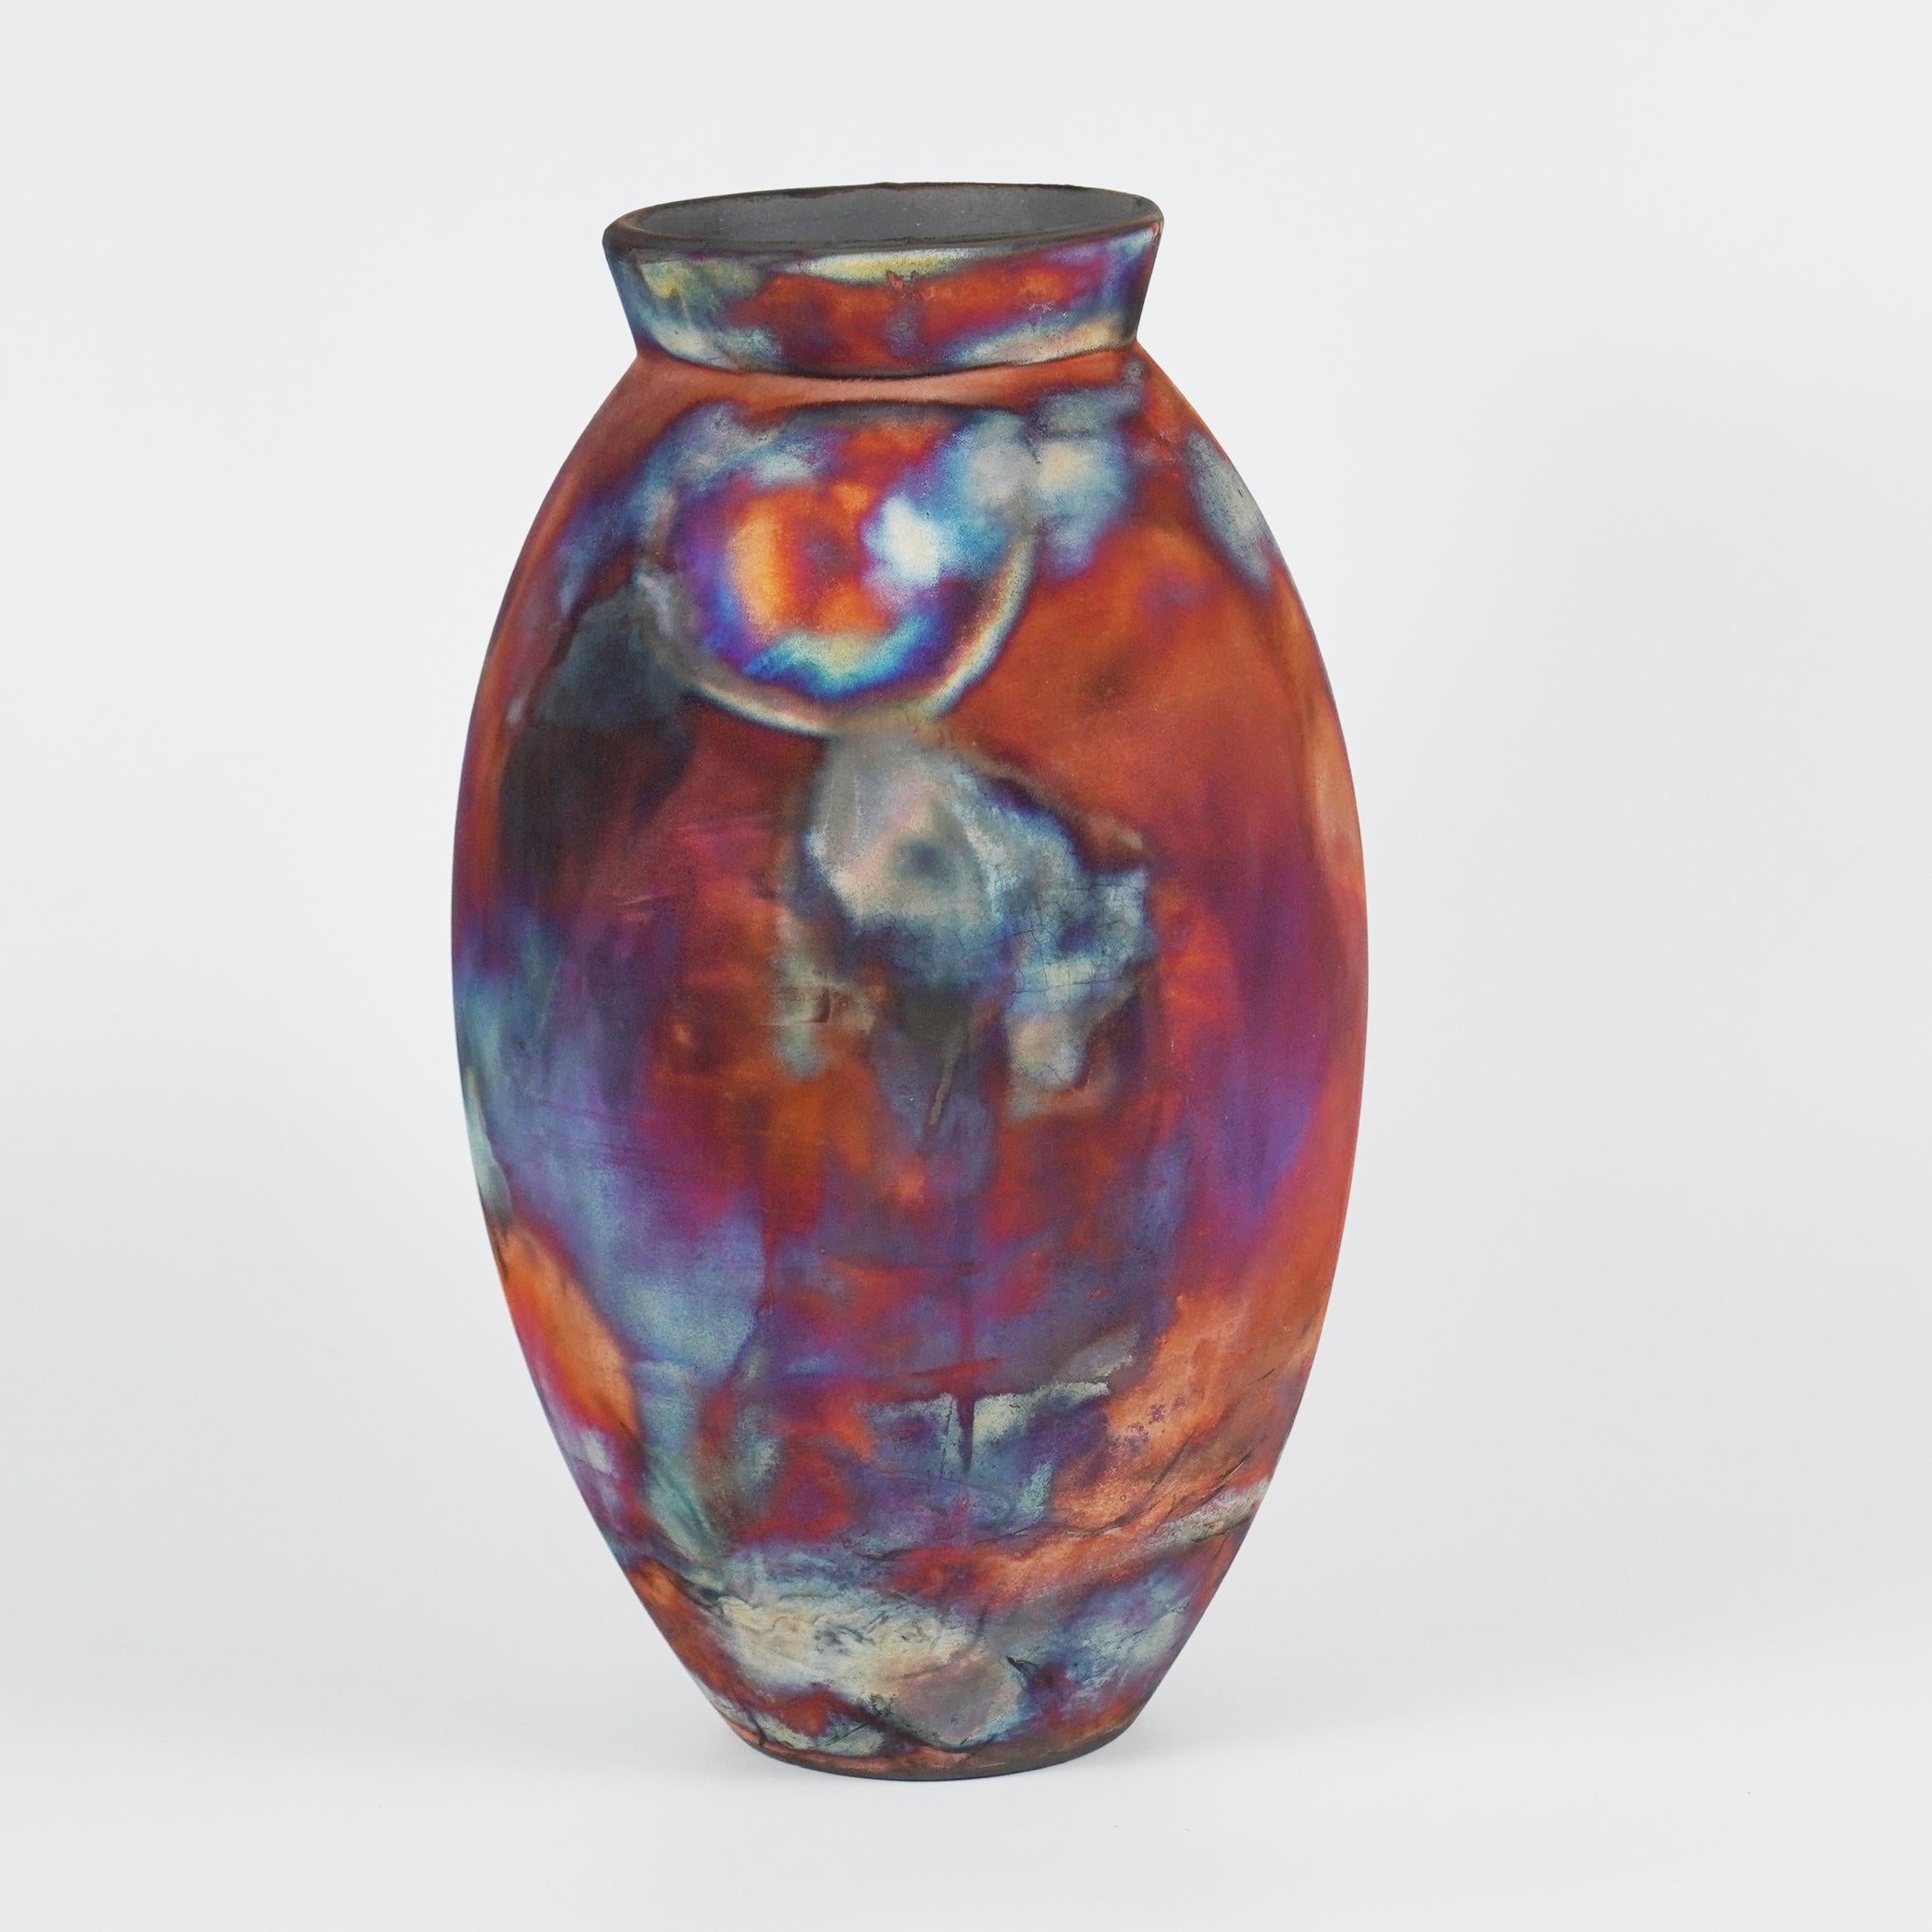 Ein faszinierender Anblick, sobald die regenbogenartigen Patinas ins Auge fallen. Die ovale Vase ist ein hohes, tropfenförmiges Design, das einen Hauch von Eleganz und Faszination in einen Innenraum bringt. Mit der Raku-Technik hergestellt, wird sie